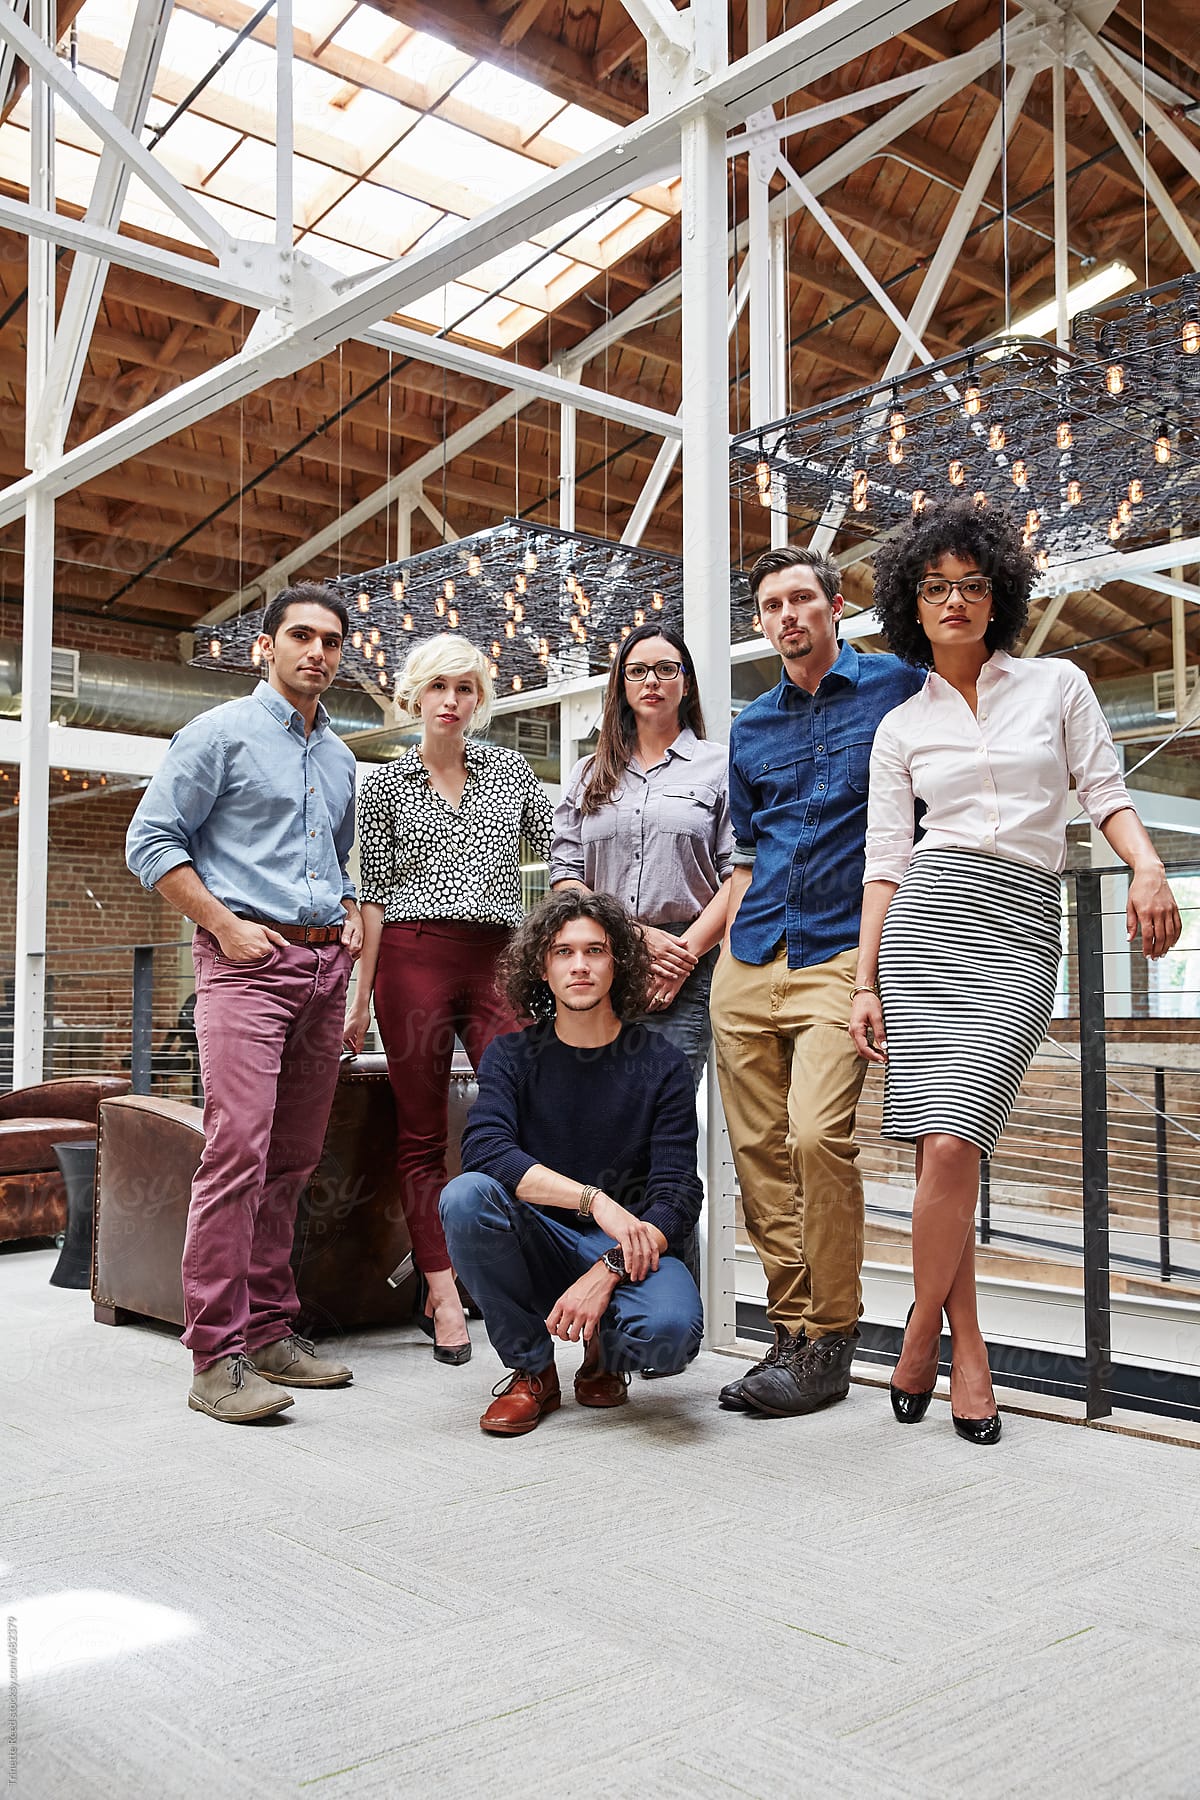 Group portrait of millennials in high tech office